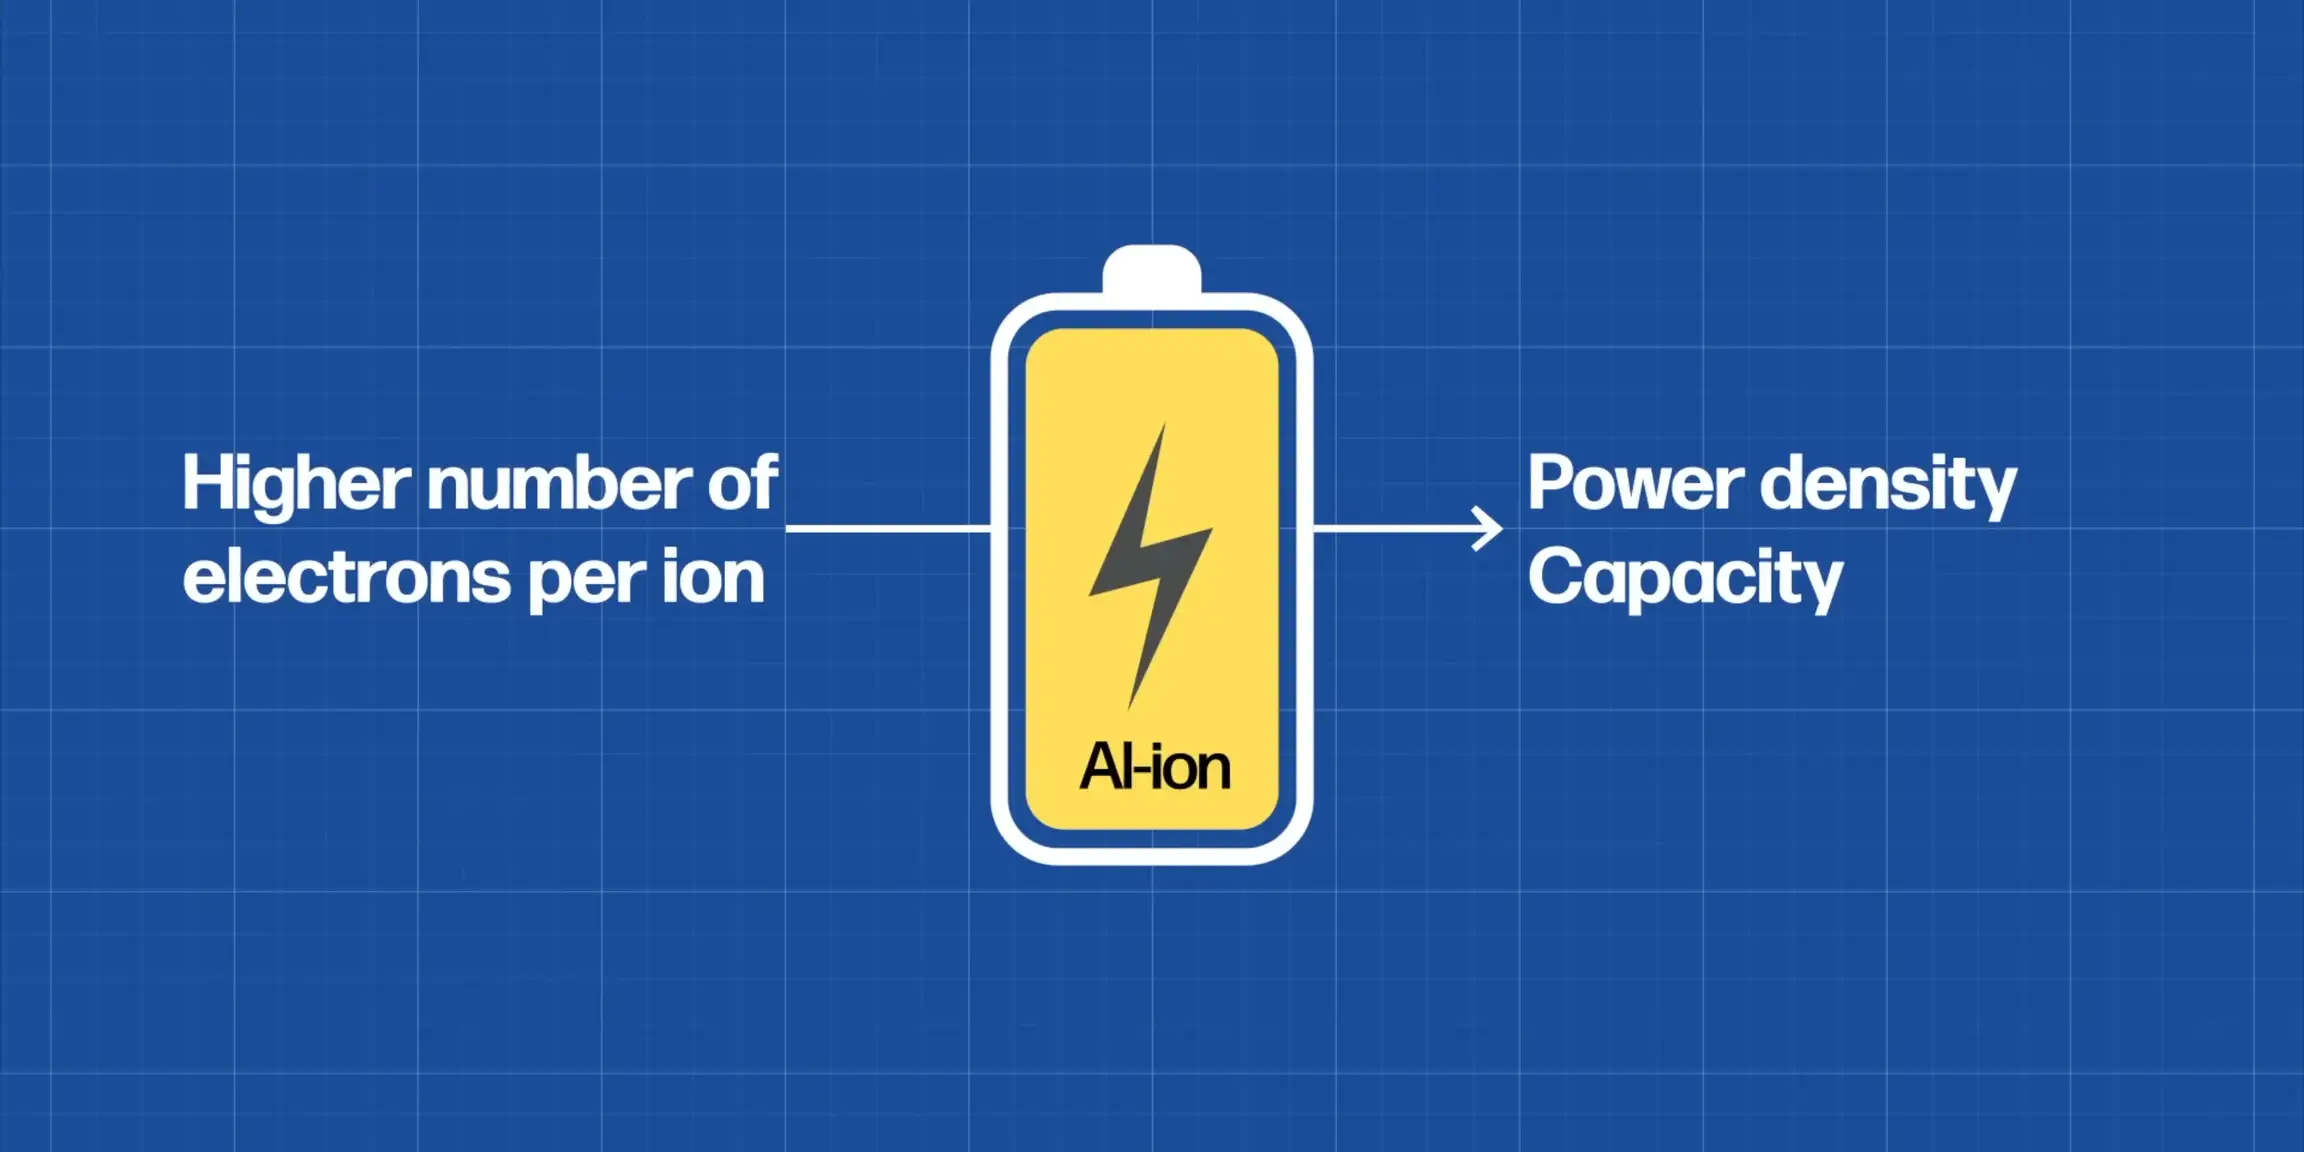 Aluminum-ion batteries